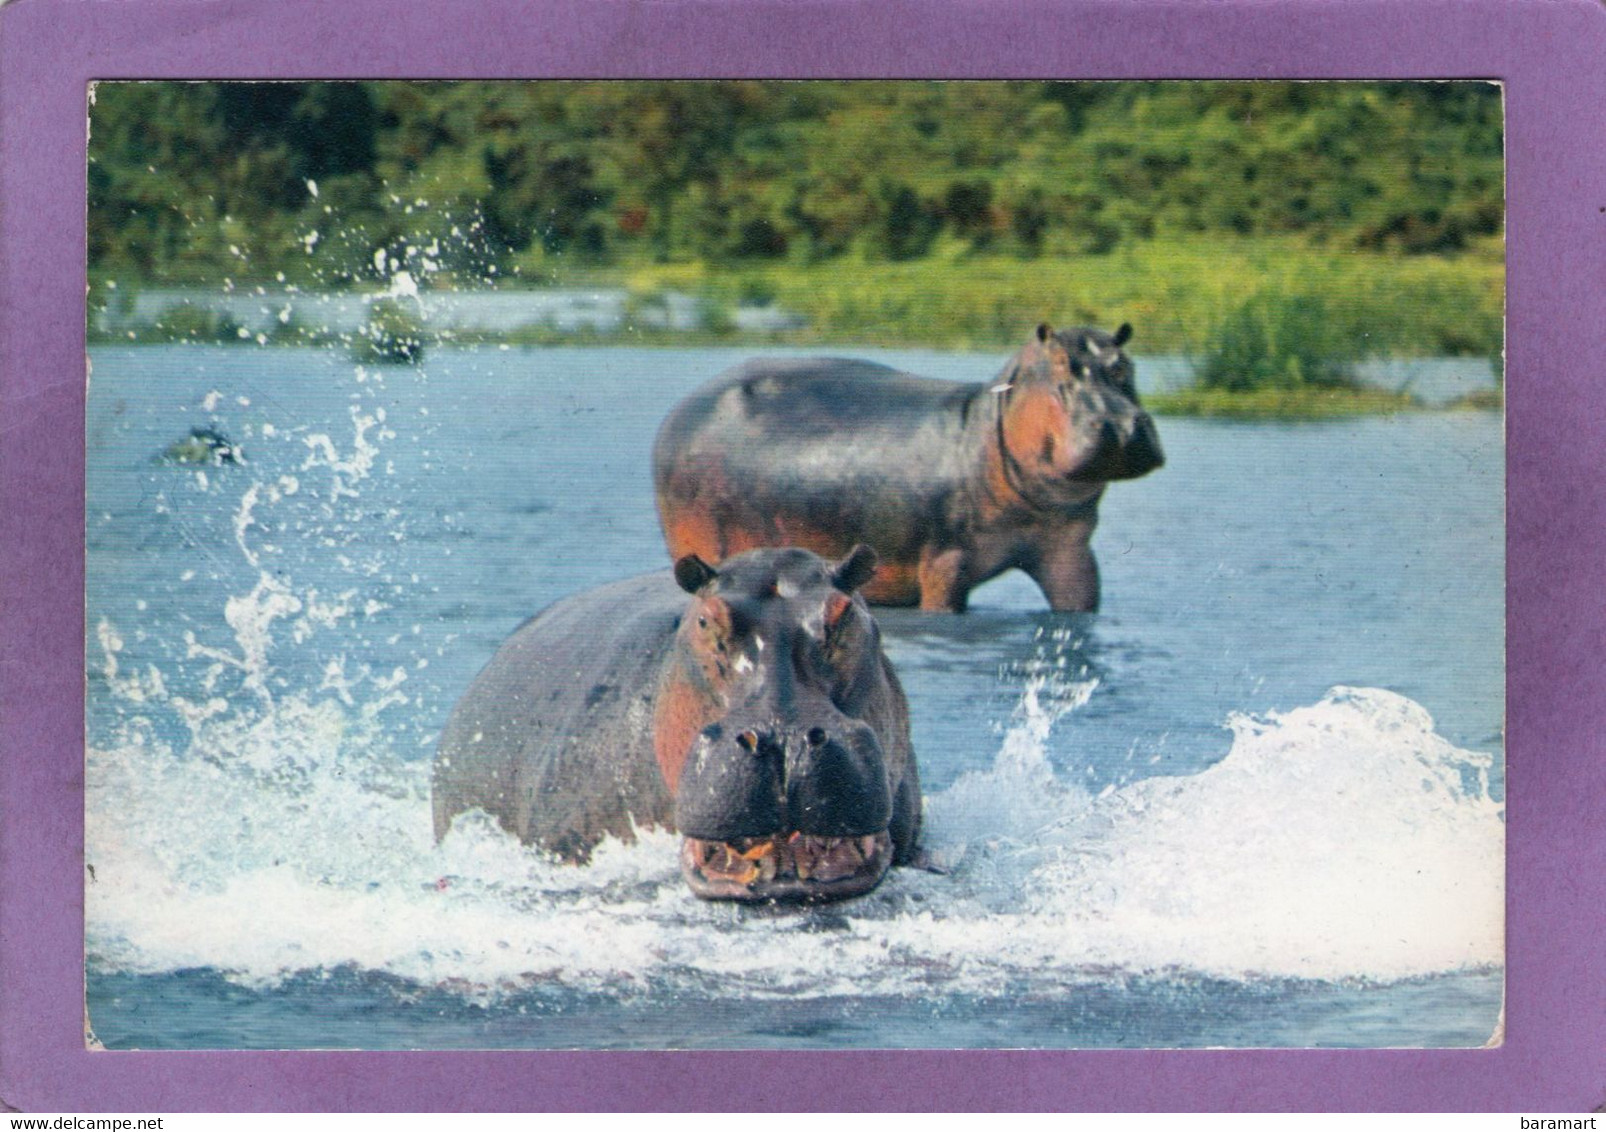 FAUNE AFRICAINE  Hippopotames  AFRICAN FAUNA  Hippopotmus - Hippopotamuses